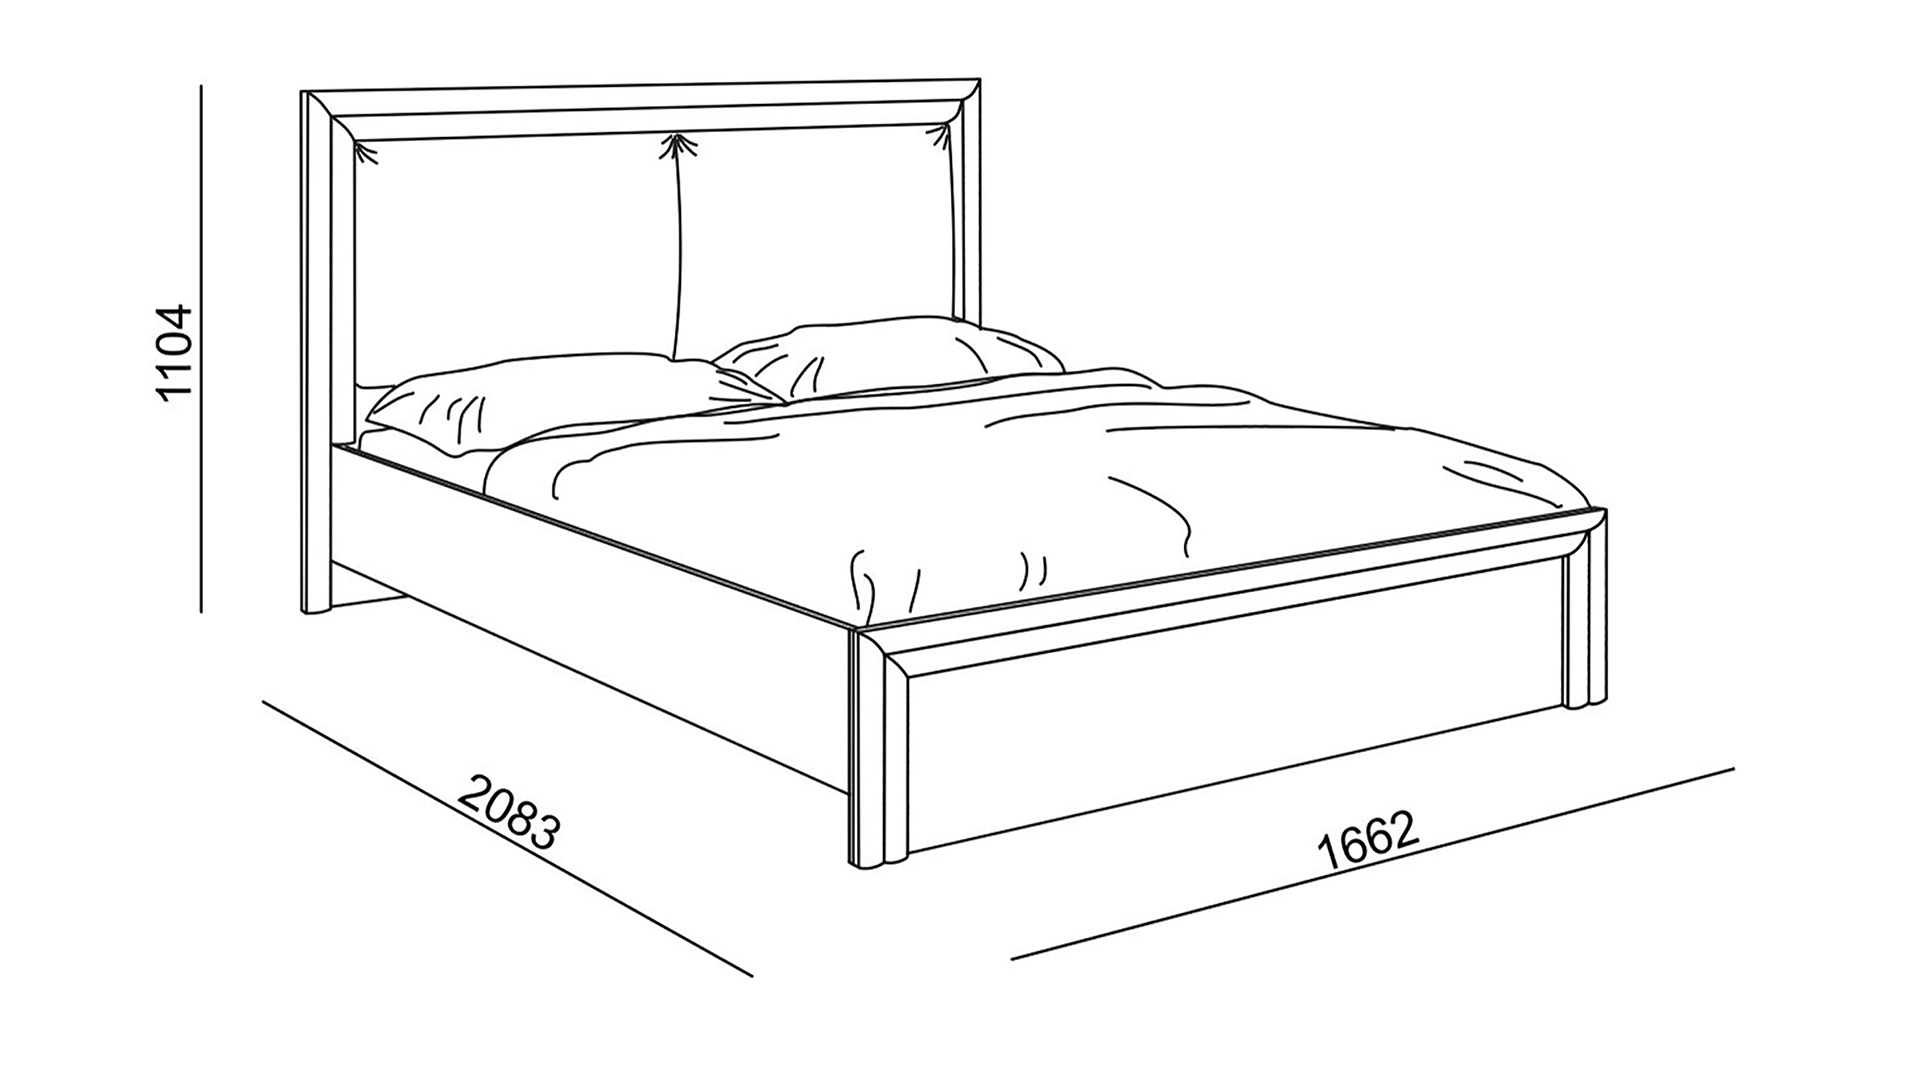 Размер полуторной кровати стандарт в см высота ширина